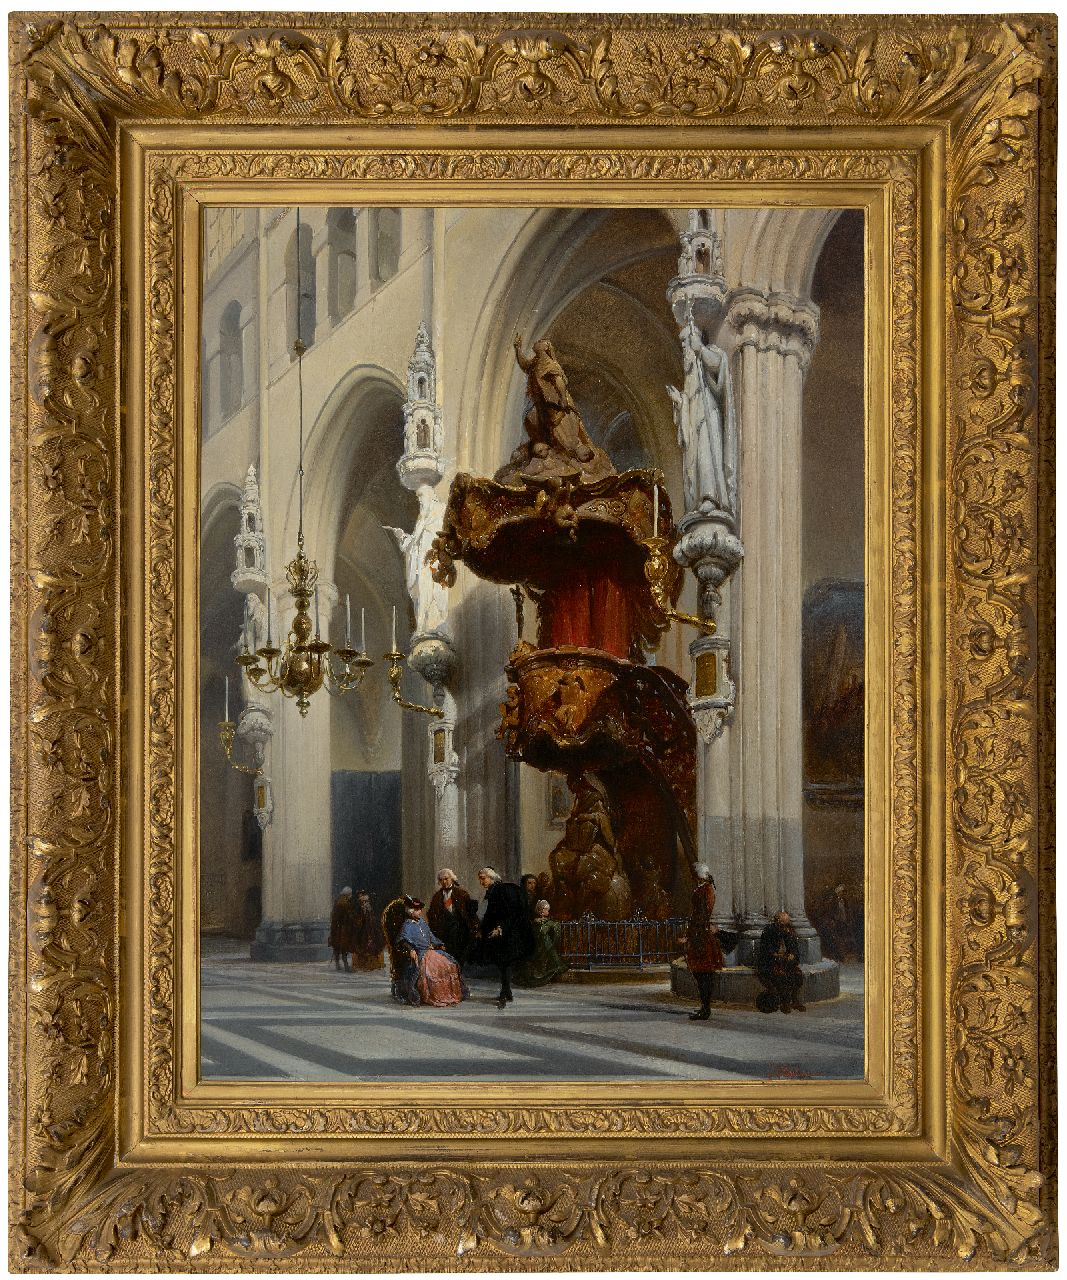 Bosboom J.  | Johannes Bosboom | Schilderijen te koop aangeboden | Interieur van de Onze Lieve Vrouwekerk in Brugge, olieverf op paneel 67,9 x 51,8 cm, gesigneerd rechtsonder